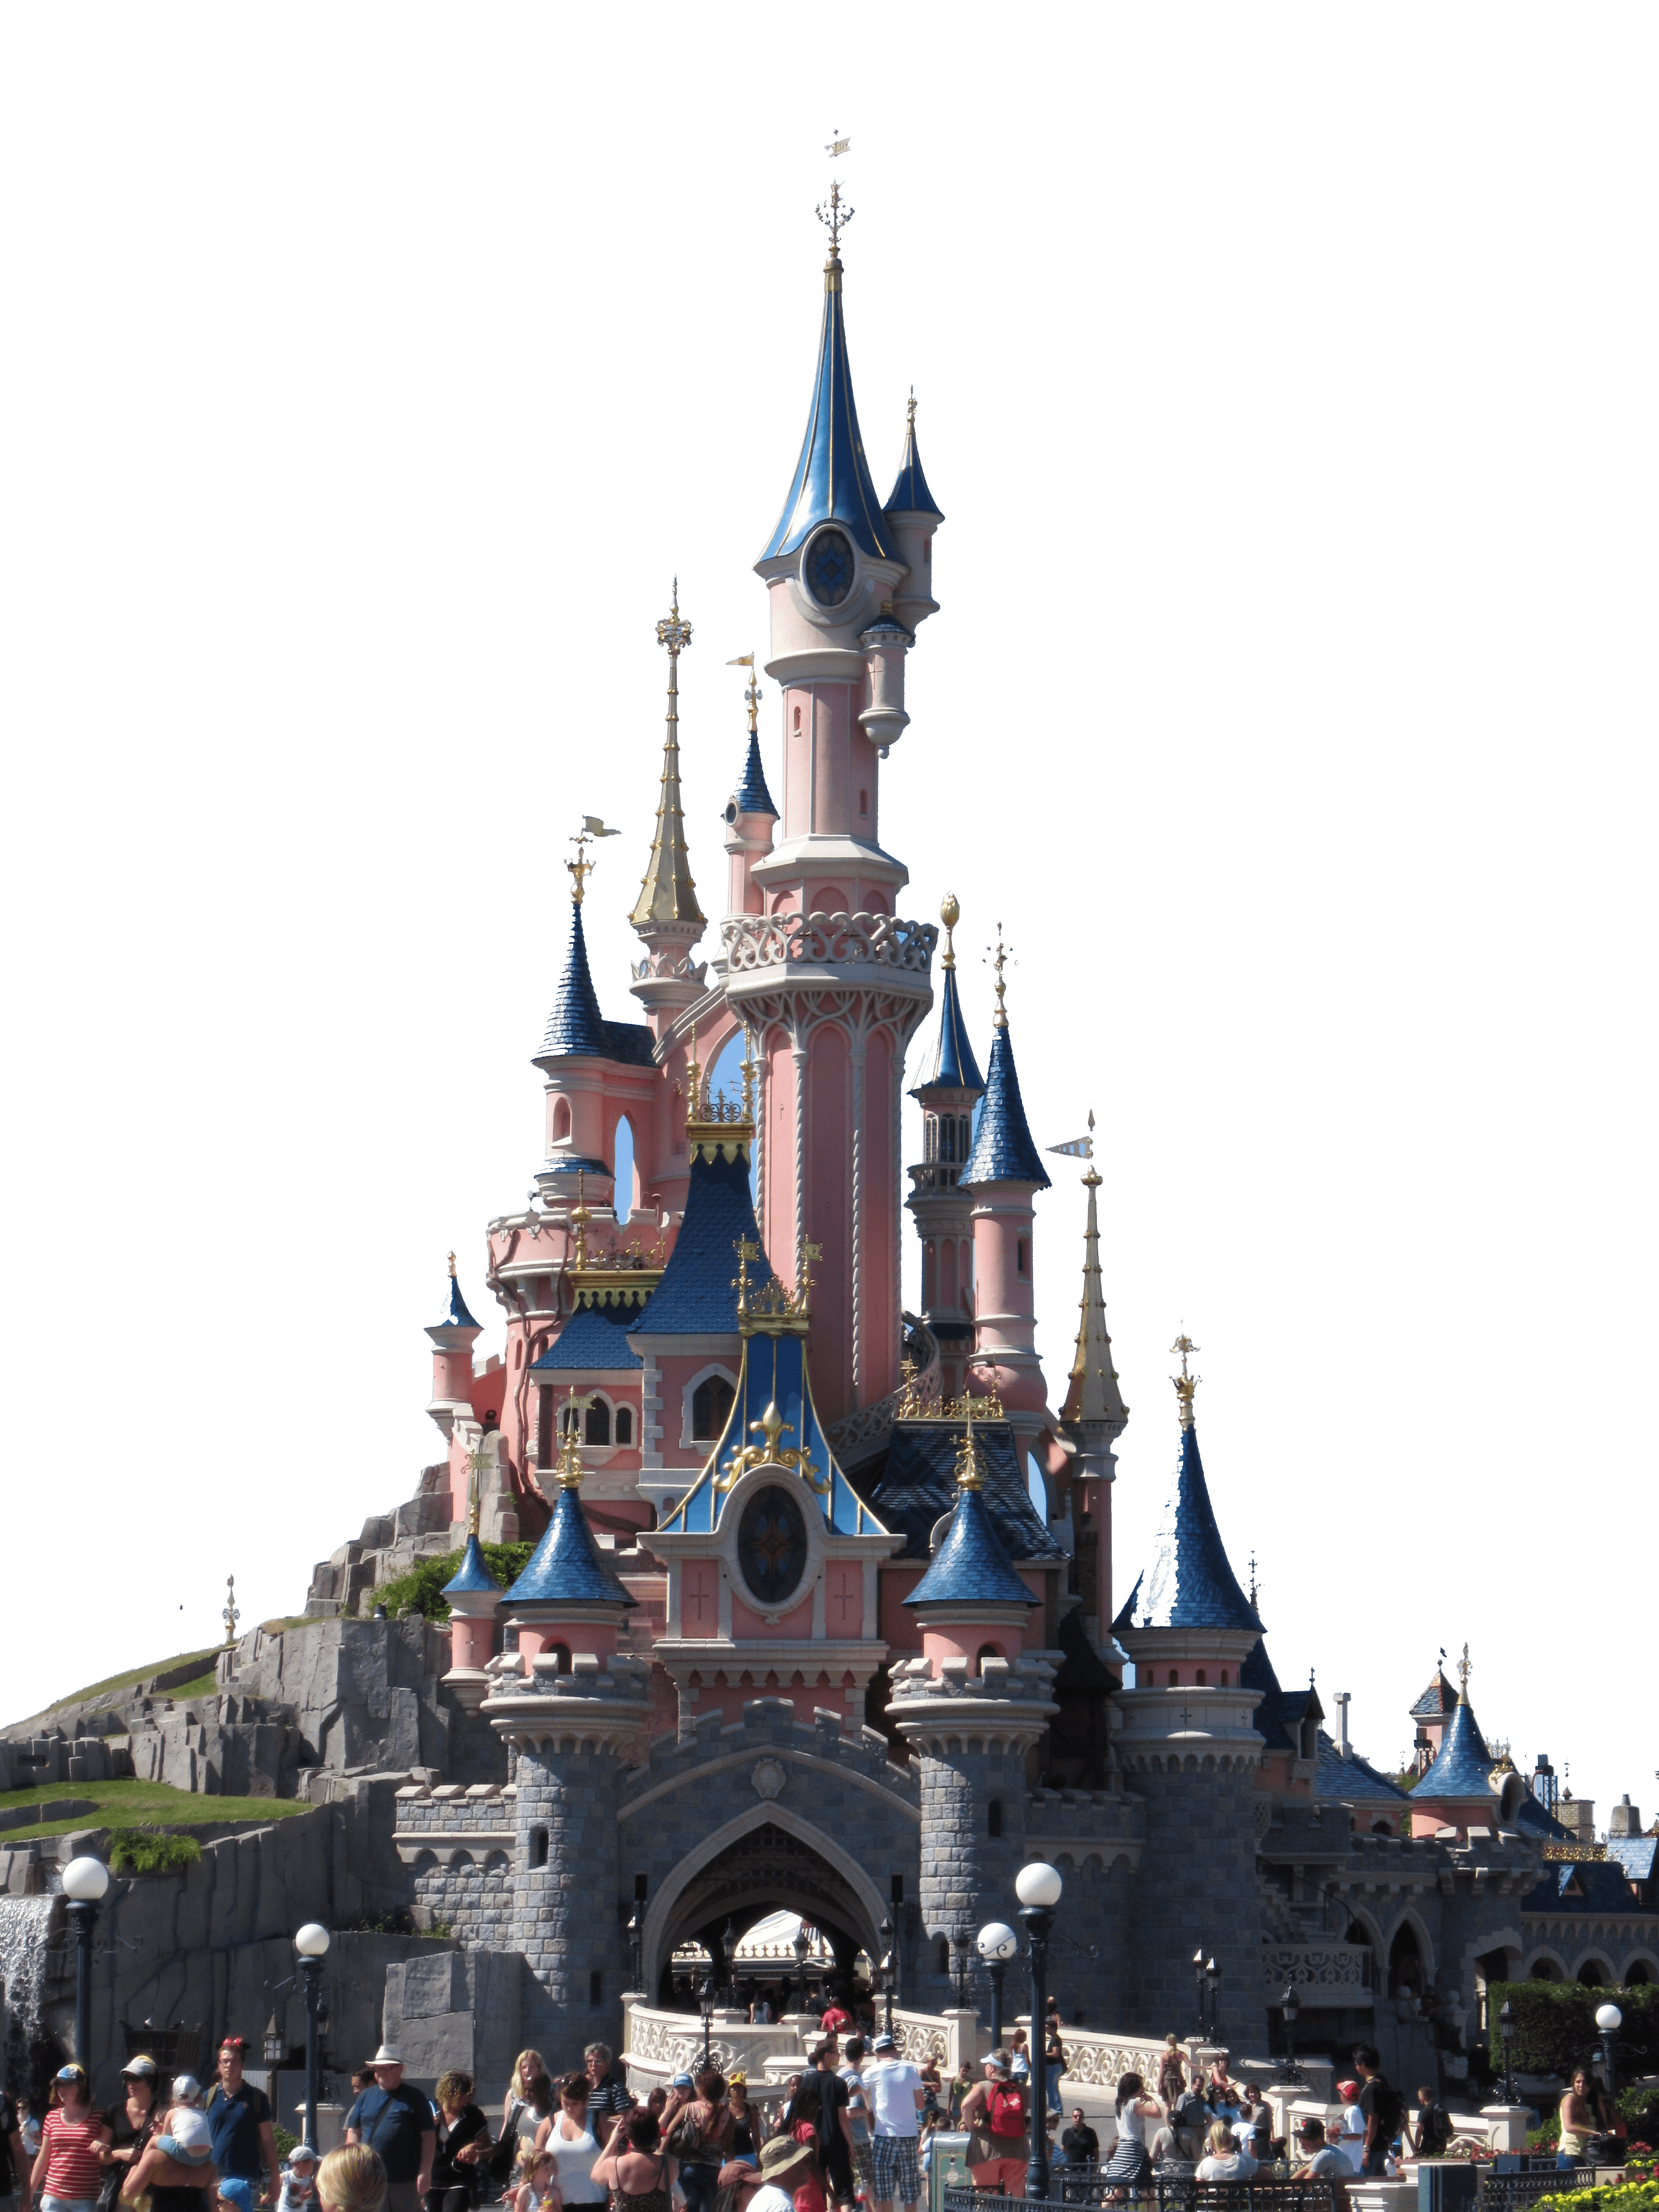 Disneyland Paris Hong Kong Disneyland Sleeping Beauty Castle